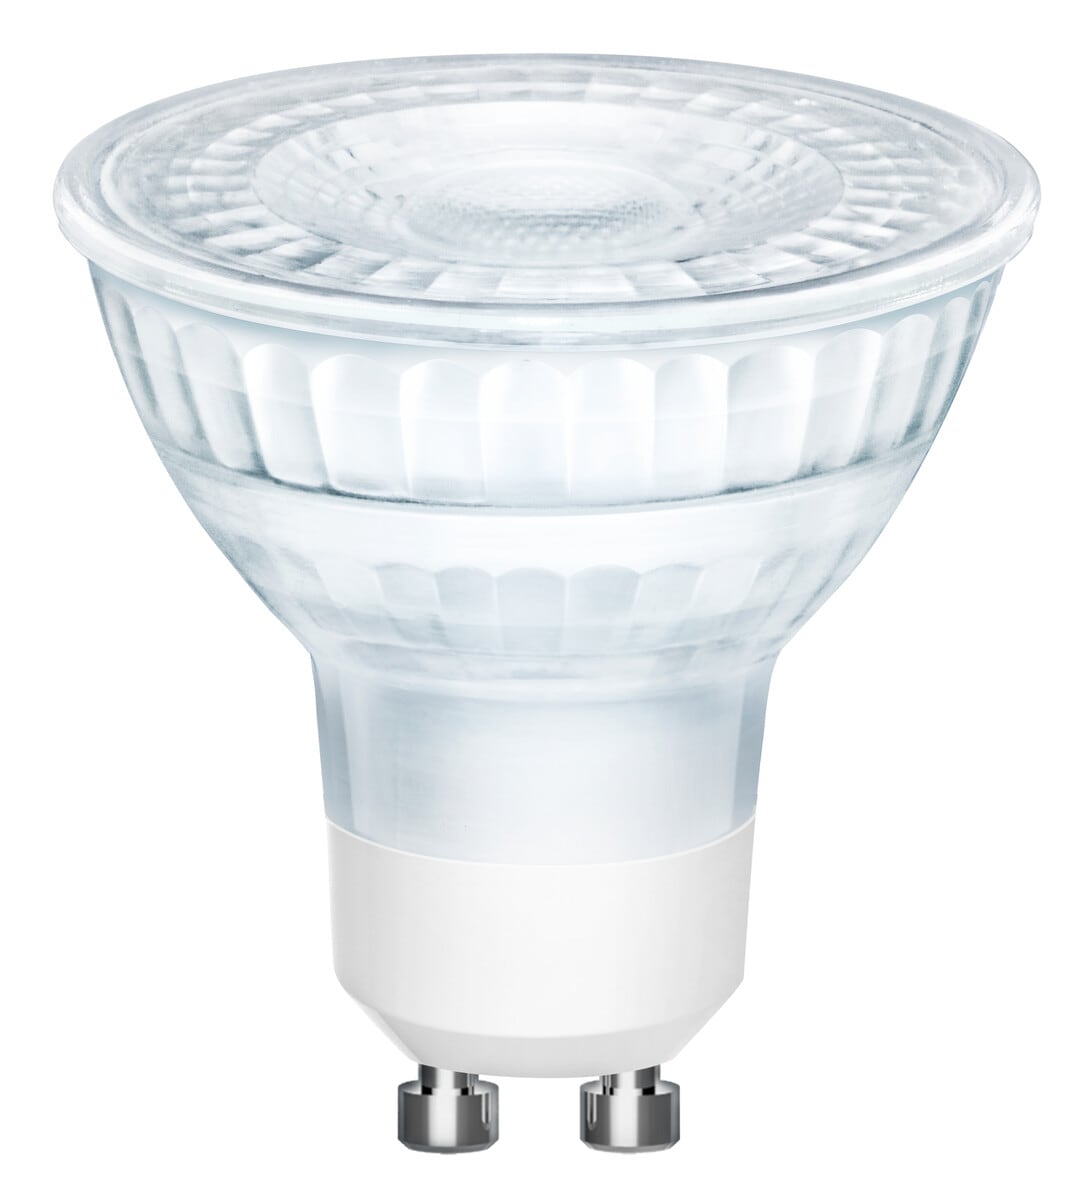 LED-lamppu GU10 kylmänvalkoinen, Clas Ohlson